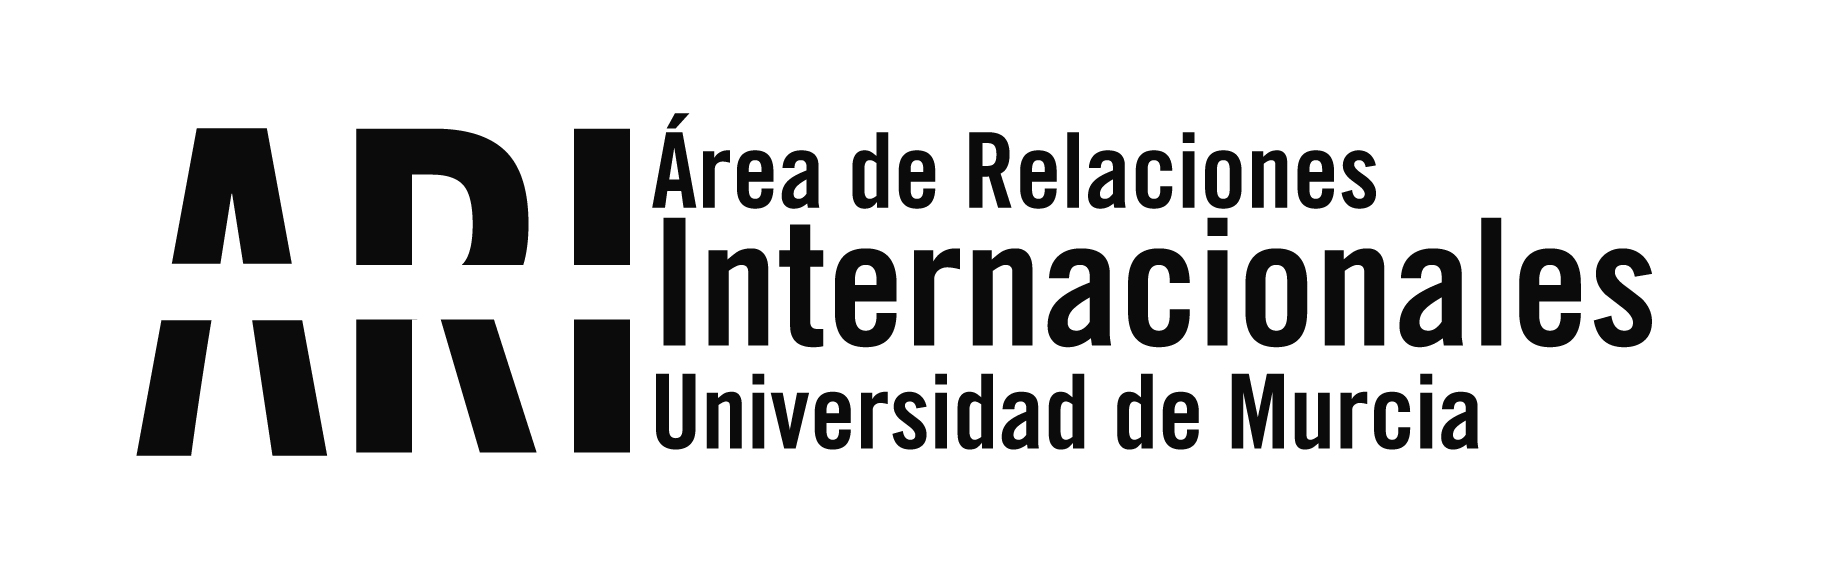 Proyecto Erasmus+ ReACTMe - Actividad formativa en la Universidad de Murcia - Área de Relaciones Internacionales